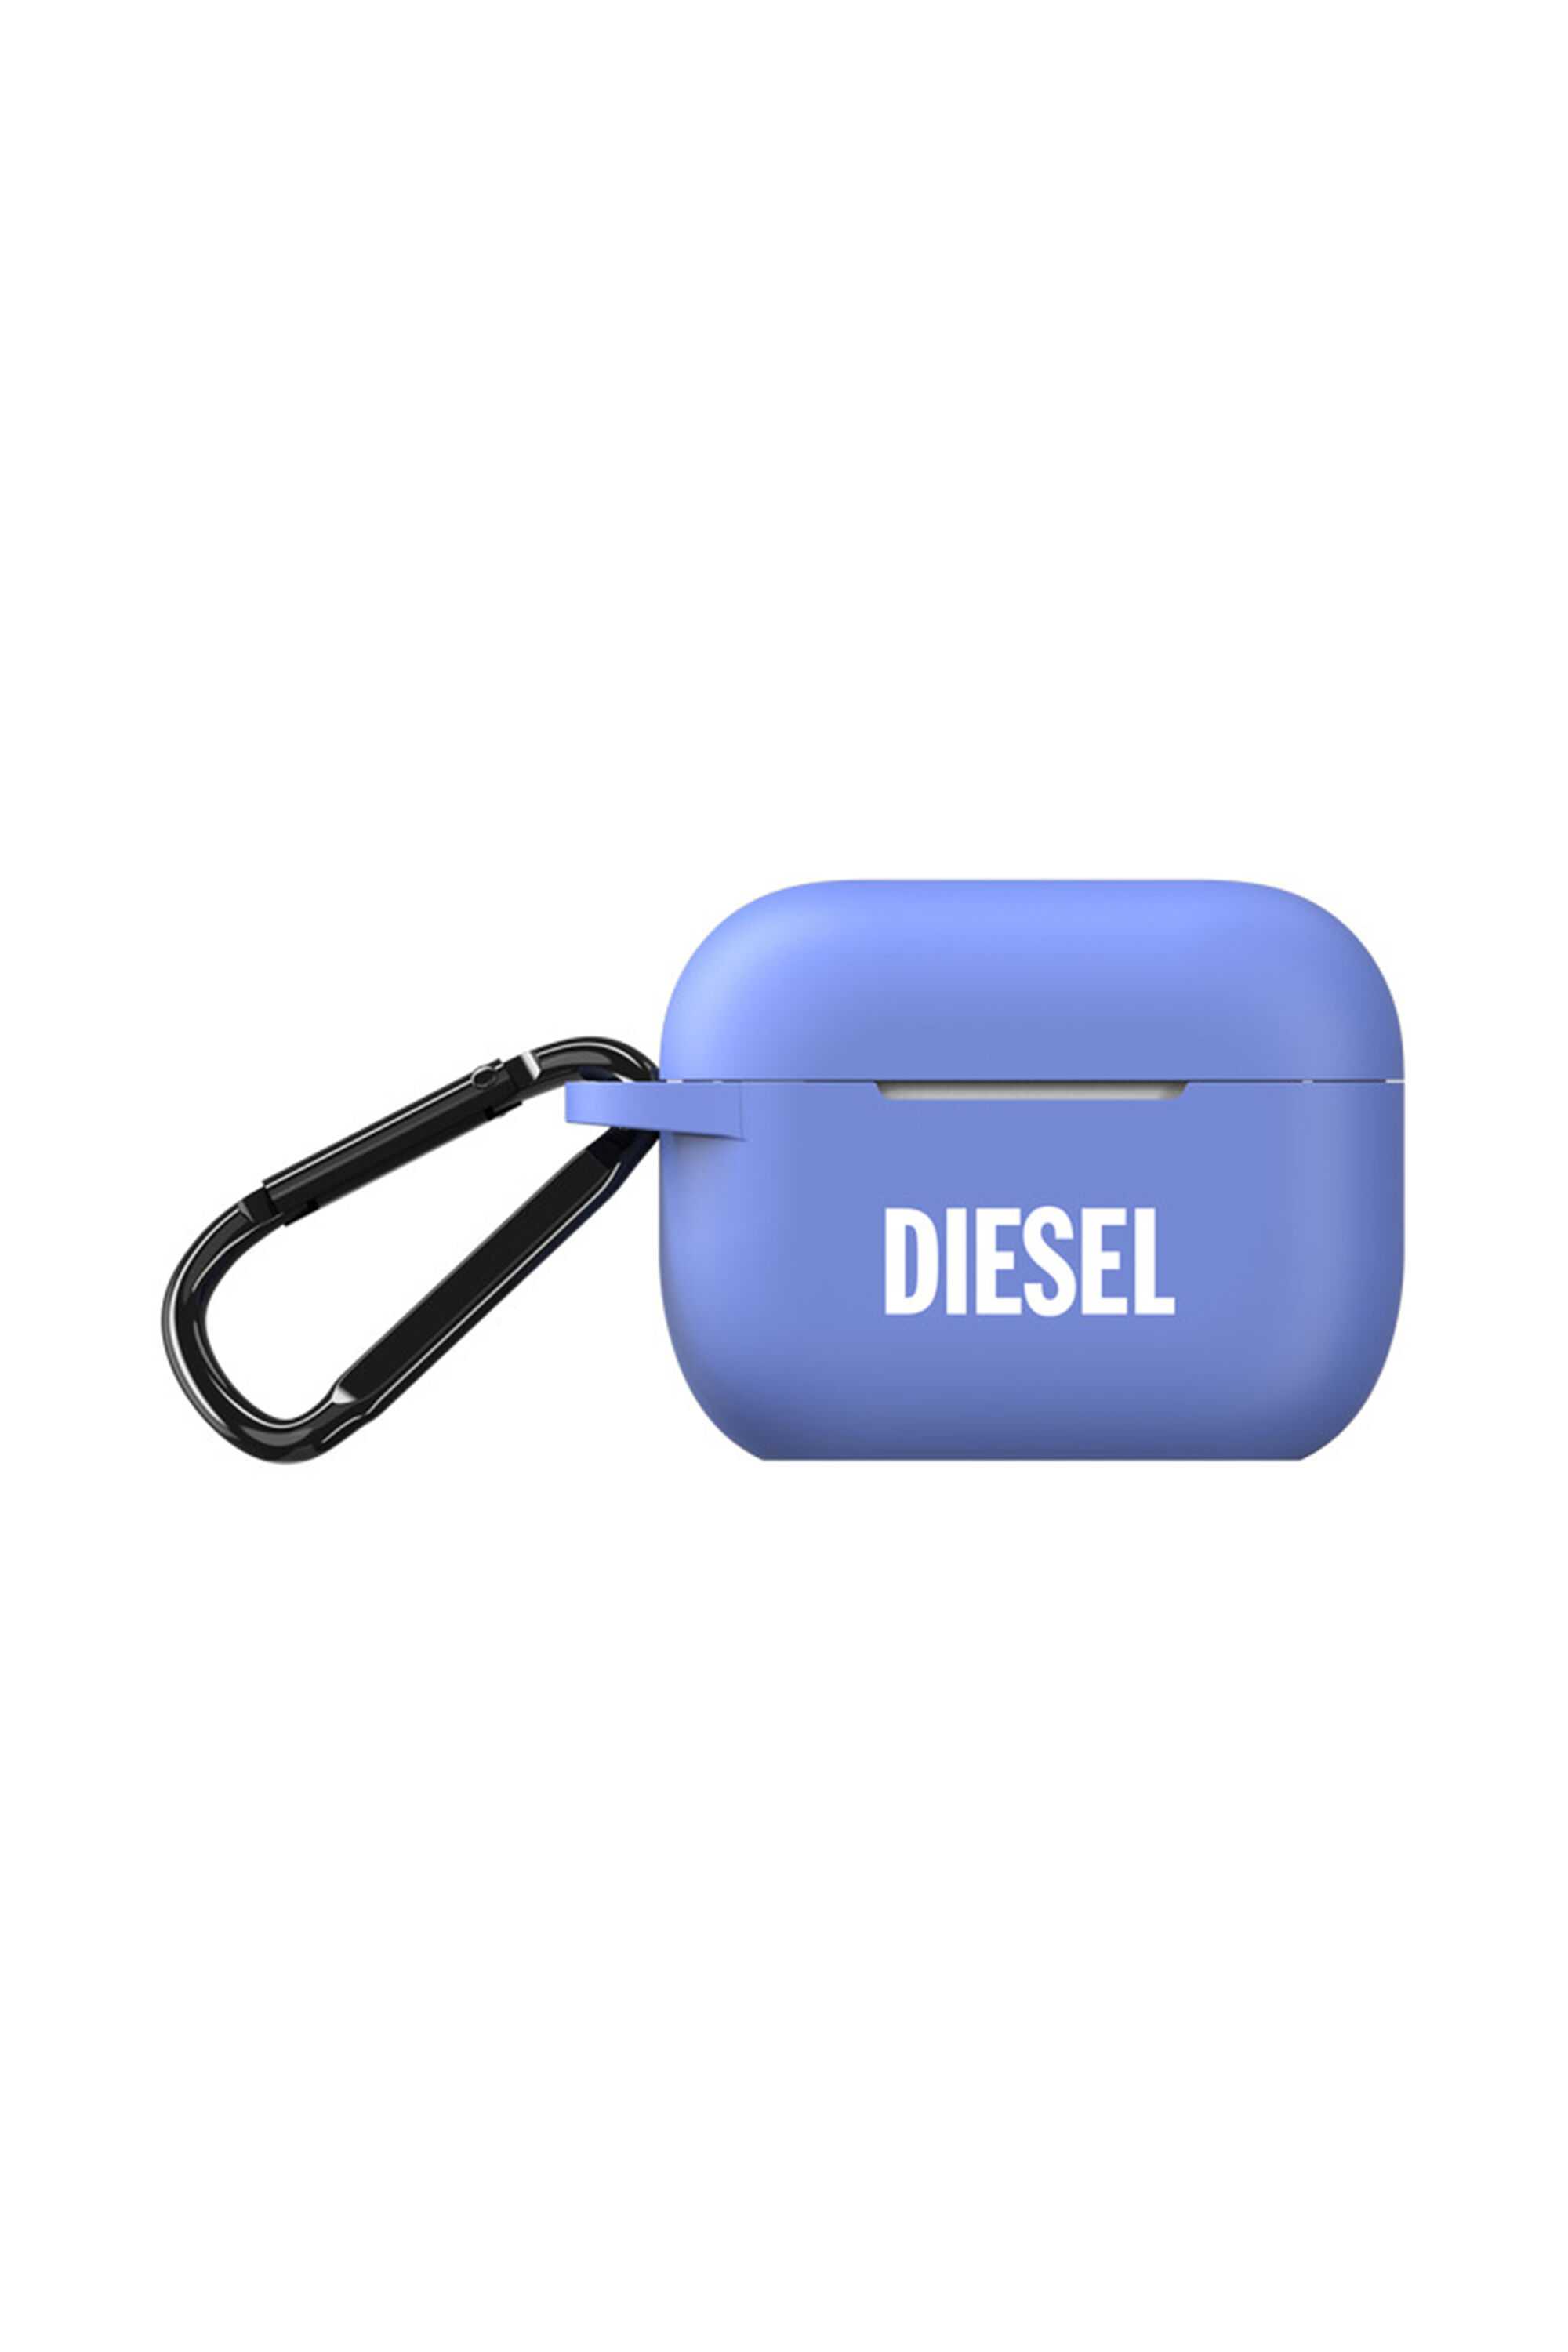 Diesel - 48321 AIRPOD CASE, Blu - Image 1